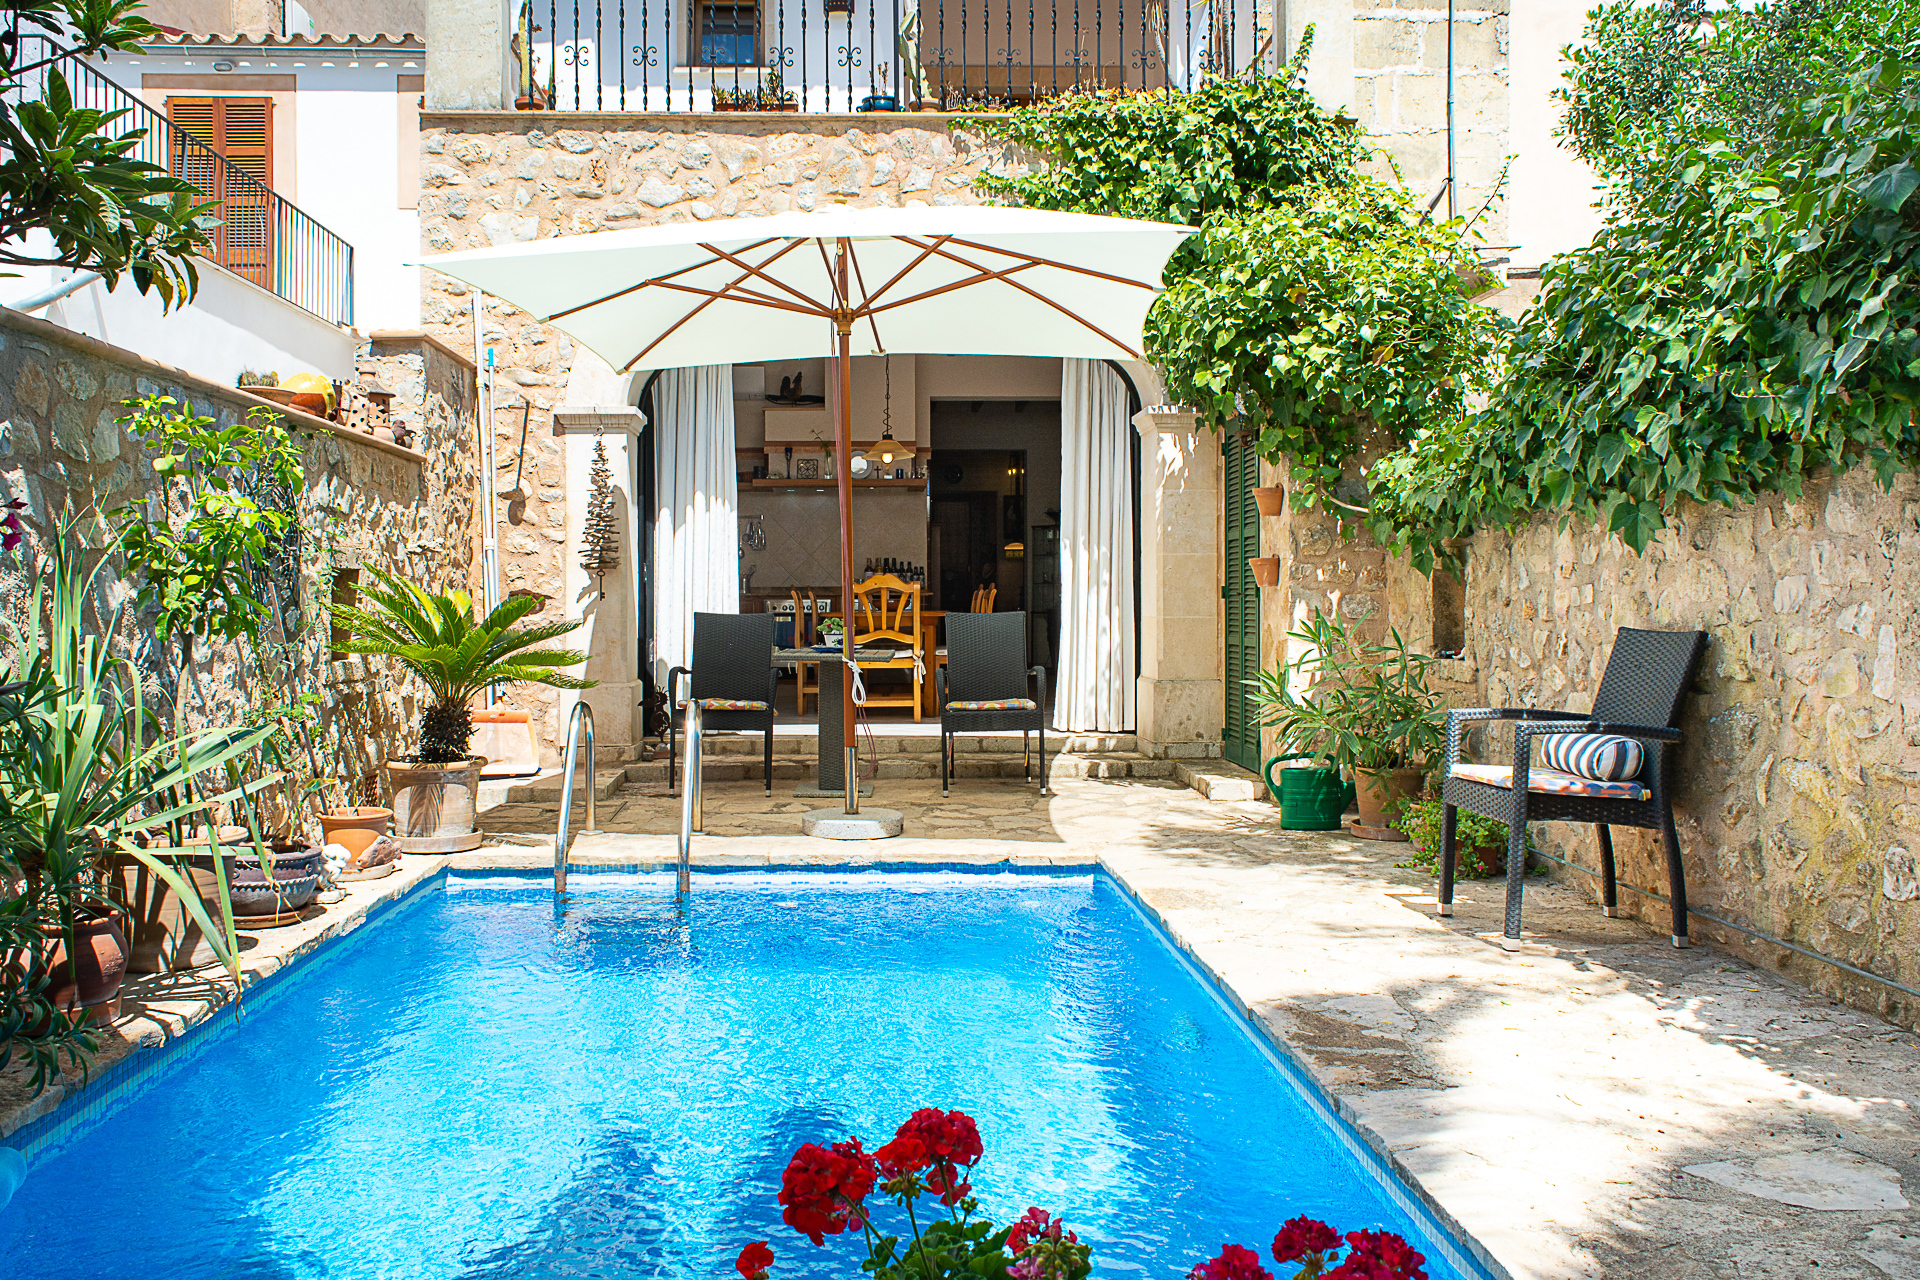 La casa del pueblo especial con piscina, balcon con vista y 2 dorm., 07250 Vilafranca de Bonany (España), Casa de pueblo